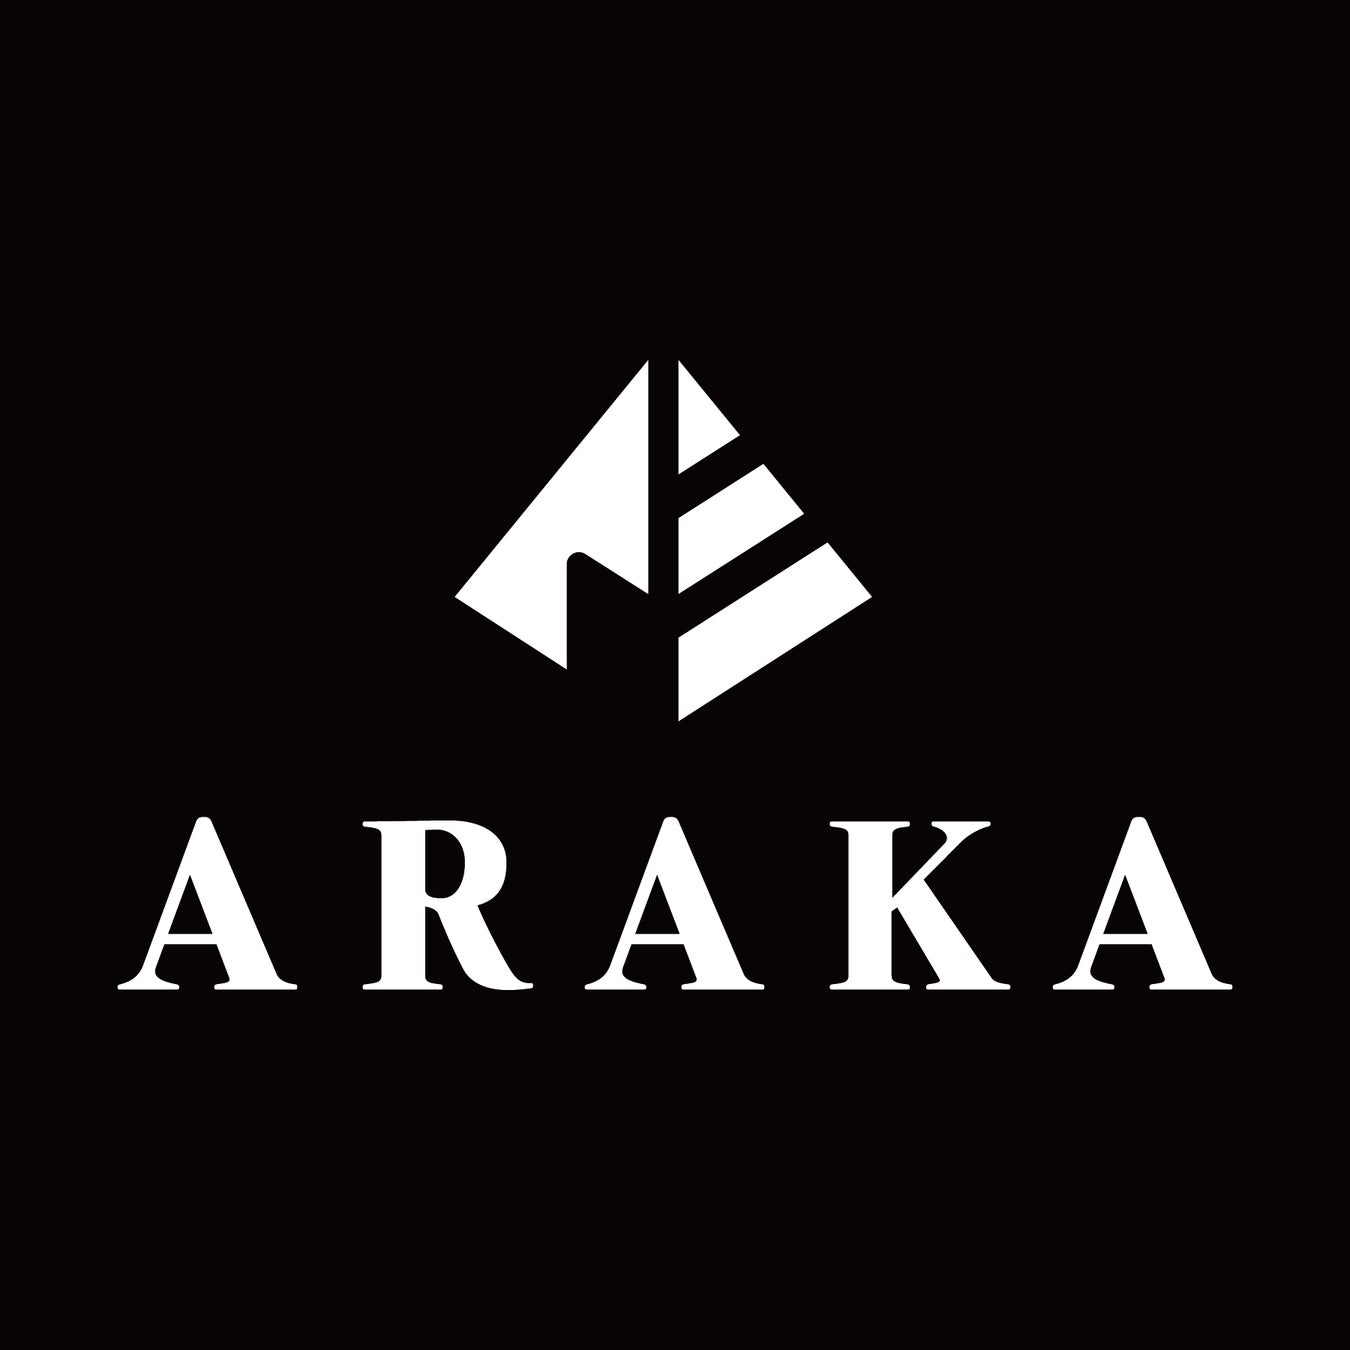 「釣りよかでしょう。」プロデュースブランド「ARAKA」 ×「 Columbia PFG」コラボアイテム第二弾としてシャツ...